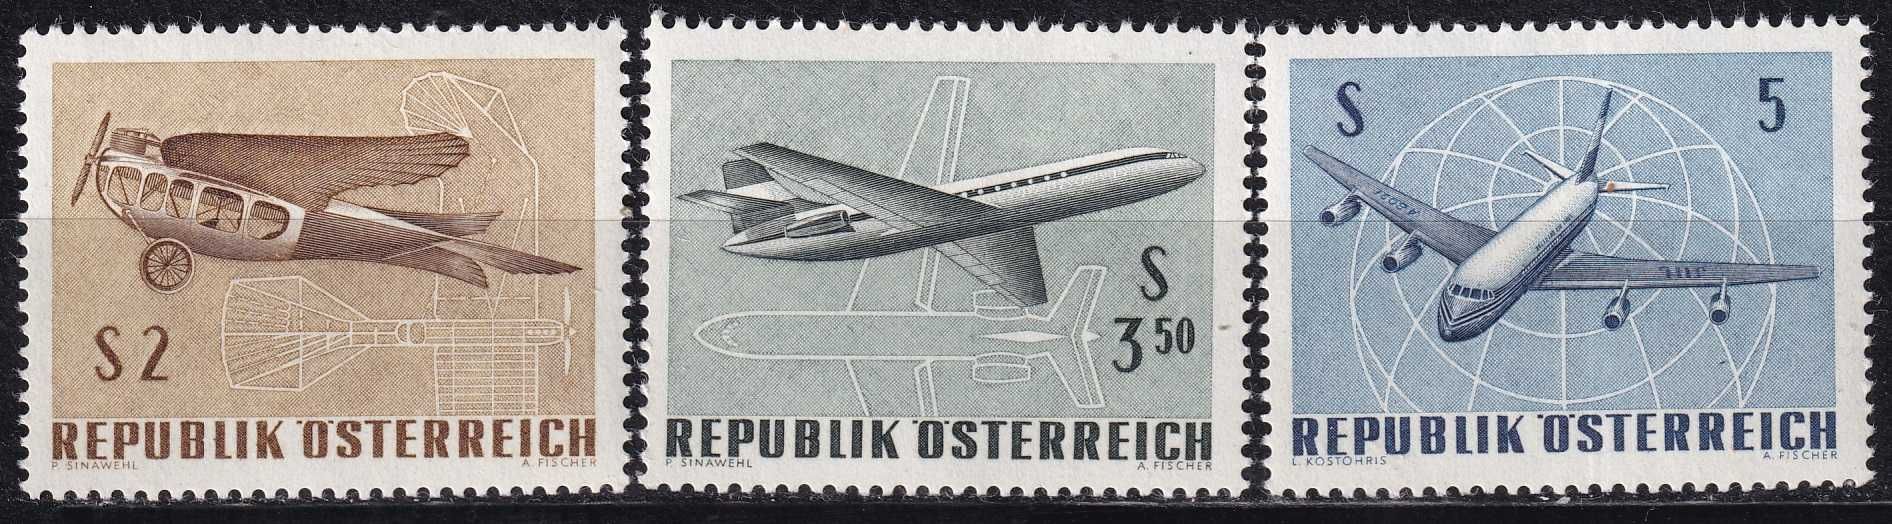 Austria 1968 cena 2,70 zł kat.1,75€ - samoloty